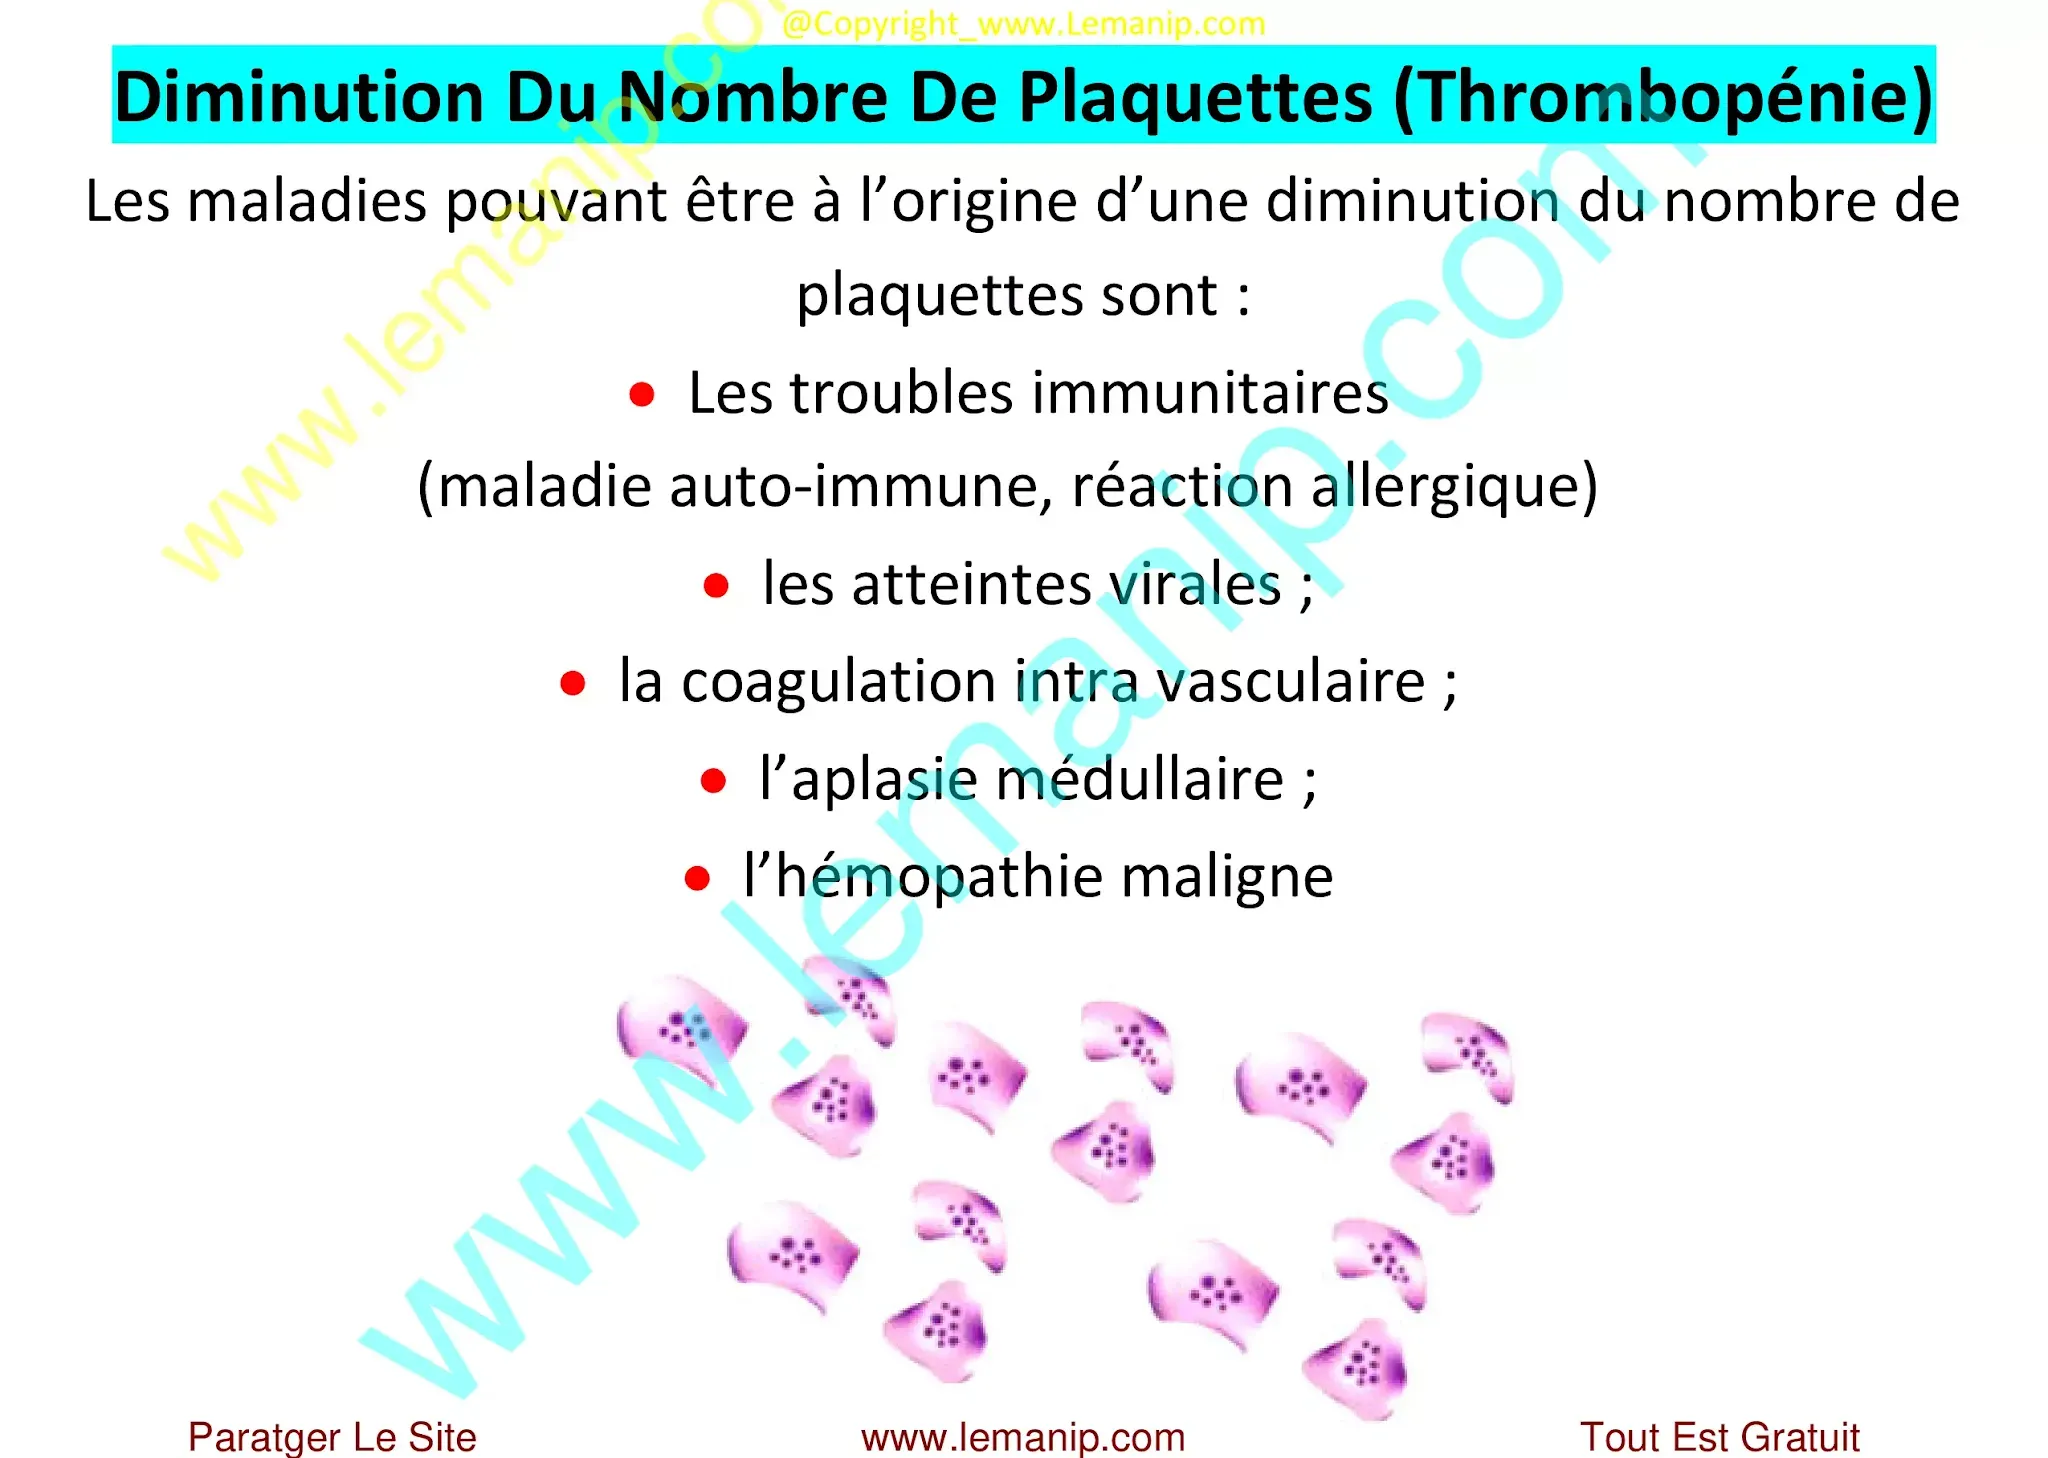 Thrombopénie : Diminution Du Nombre De Plaquettes